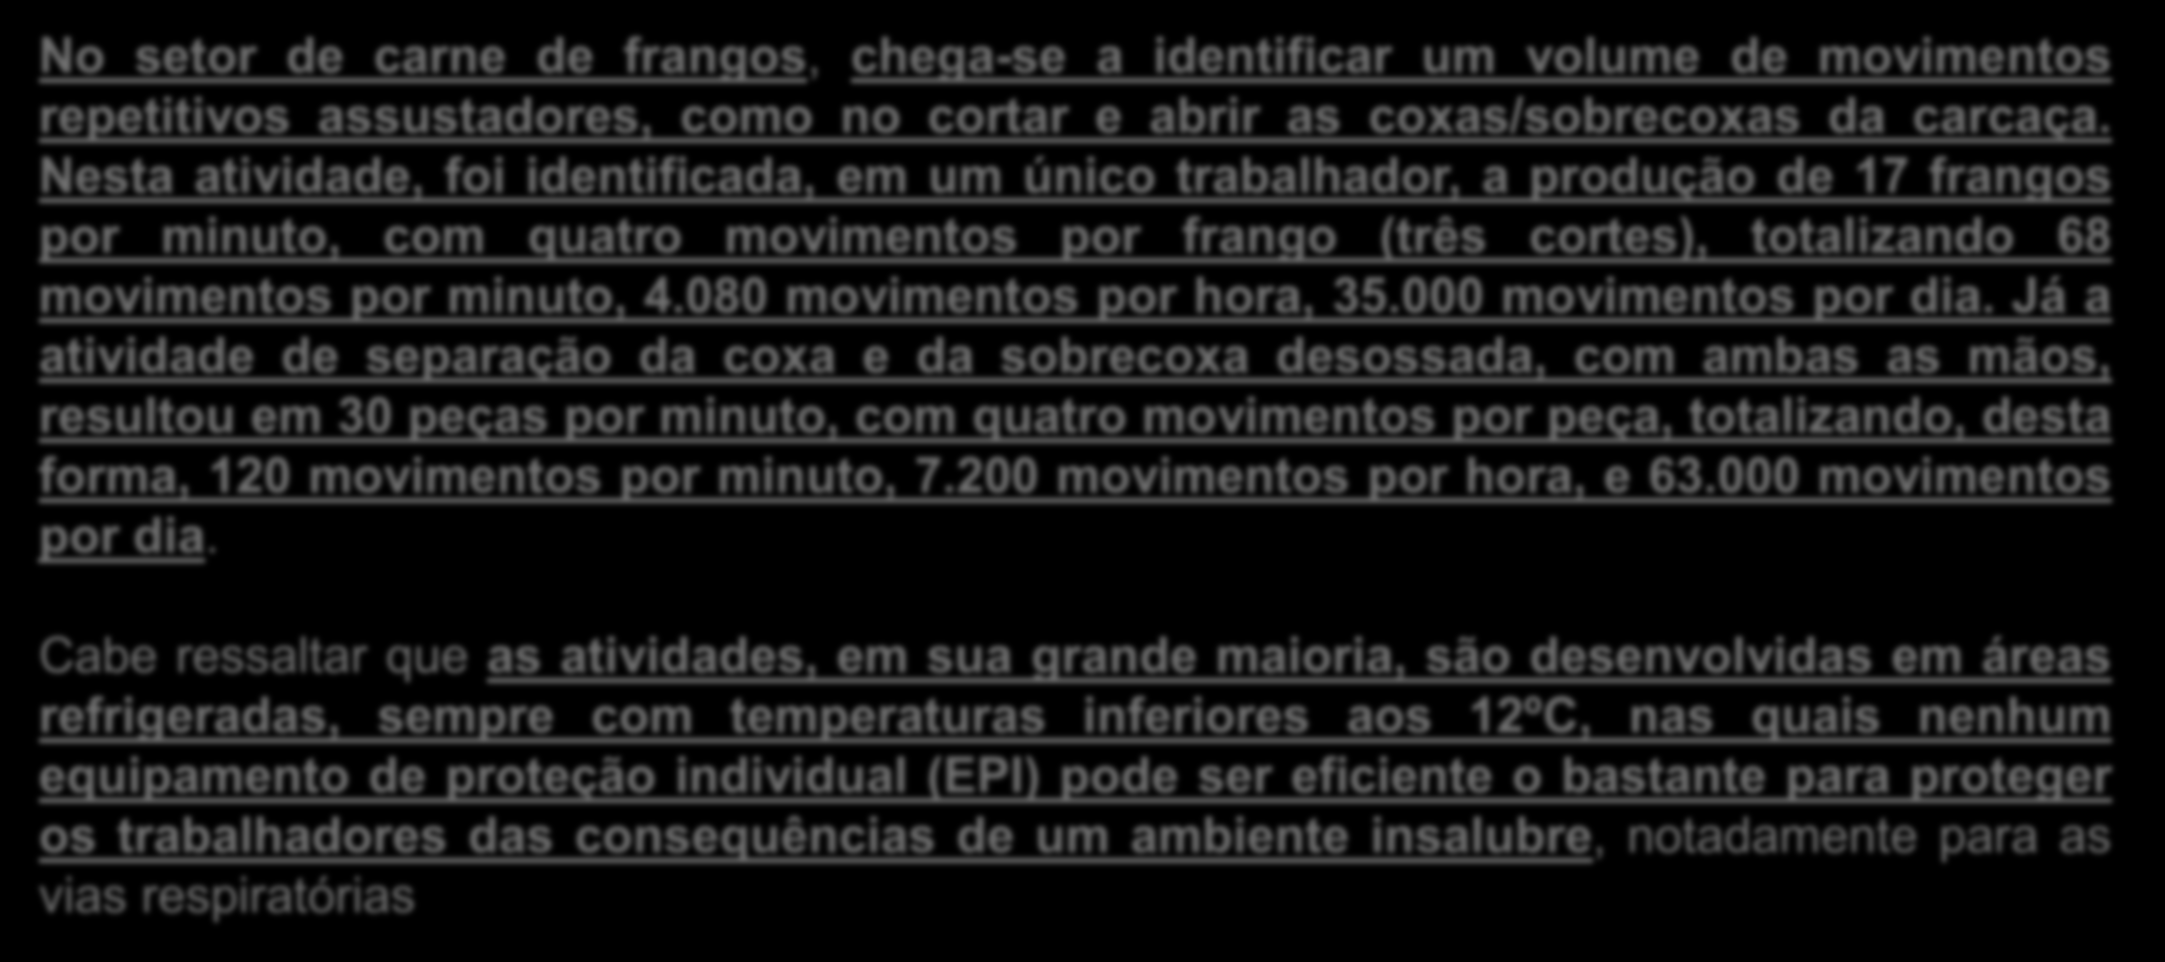 O Brasil convive com amplo processo de terceirização e quarteirização que, não obstante a contenção jurisprudencial, é responsável pela quase totalidade do trabalho análogo ao de escravo (entre 2010